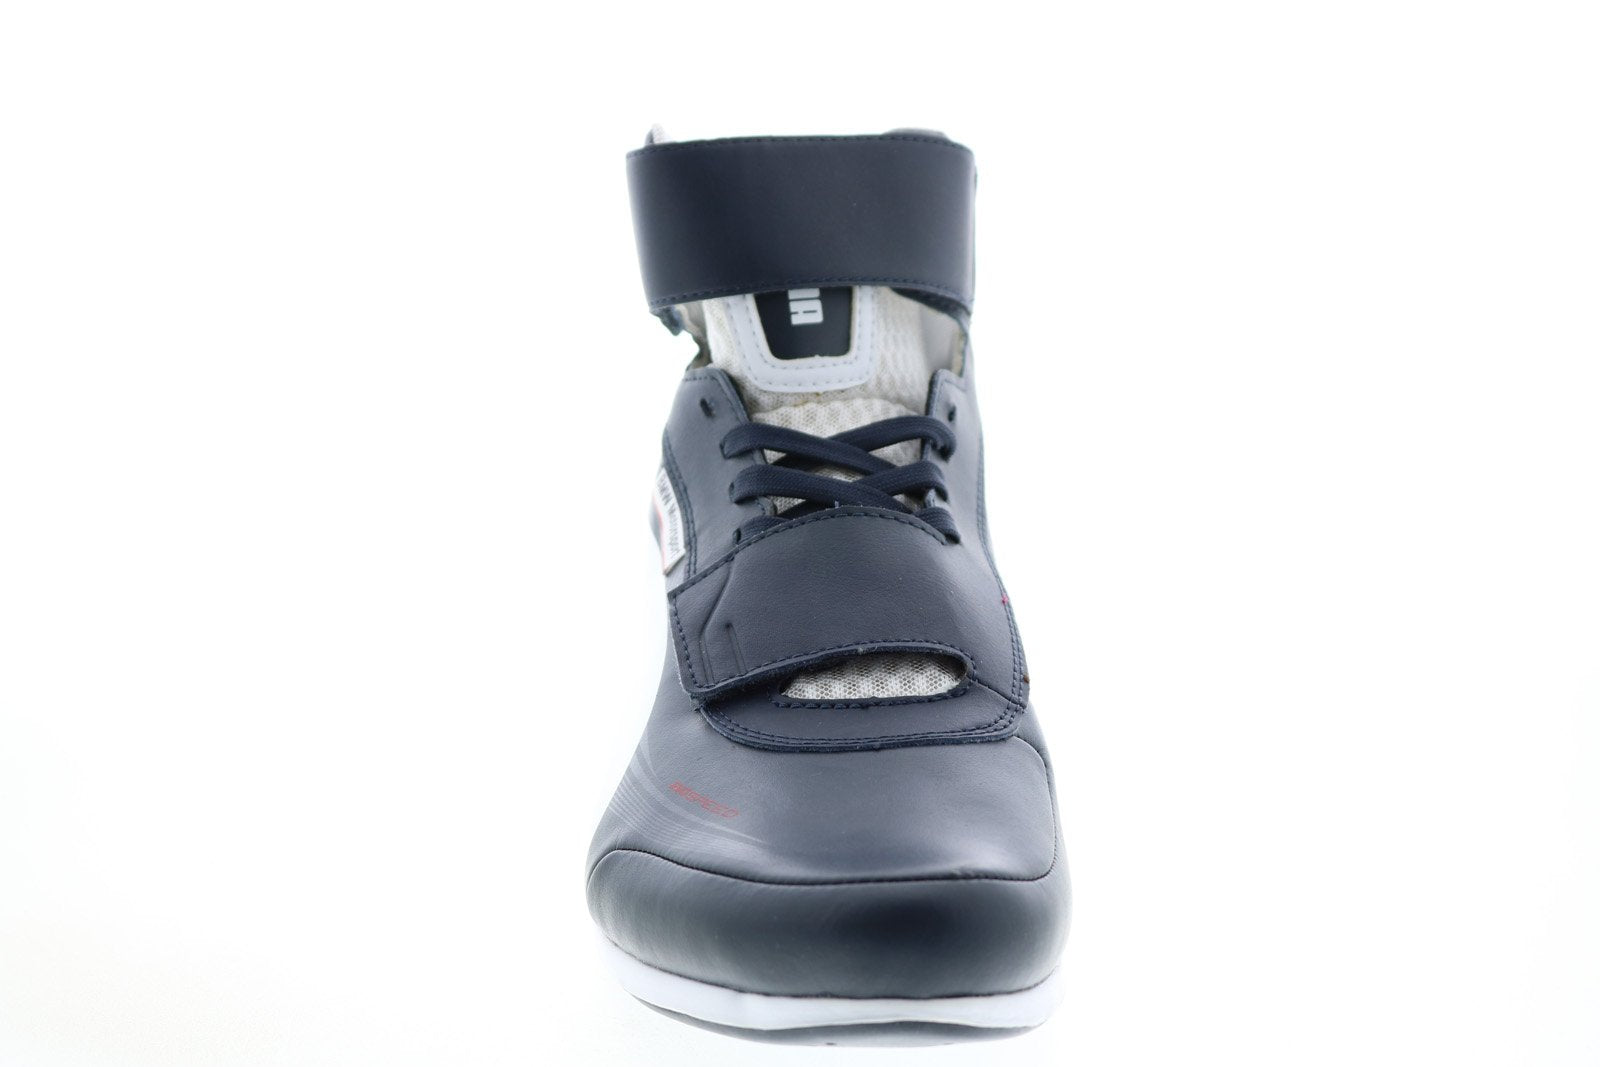 cargando Están familiarizados personalizado Puma EvoSpeed Mid BMW 1.2 Mens Blue Motorsport Inspired Sneakers Shoes -  Ruze Shoes